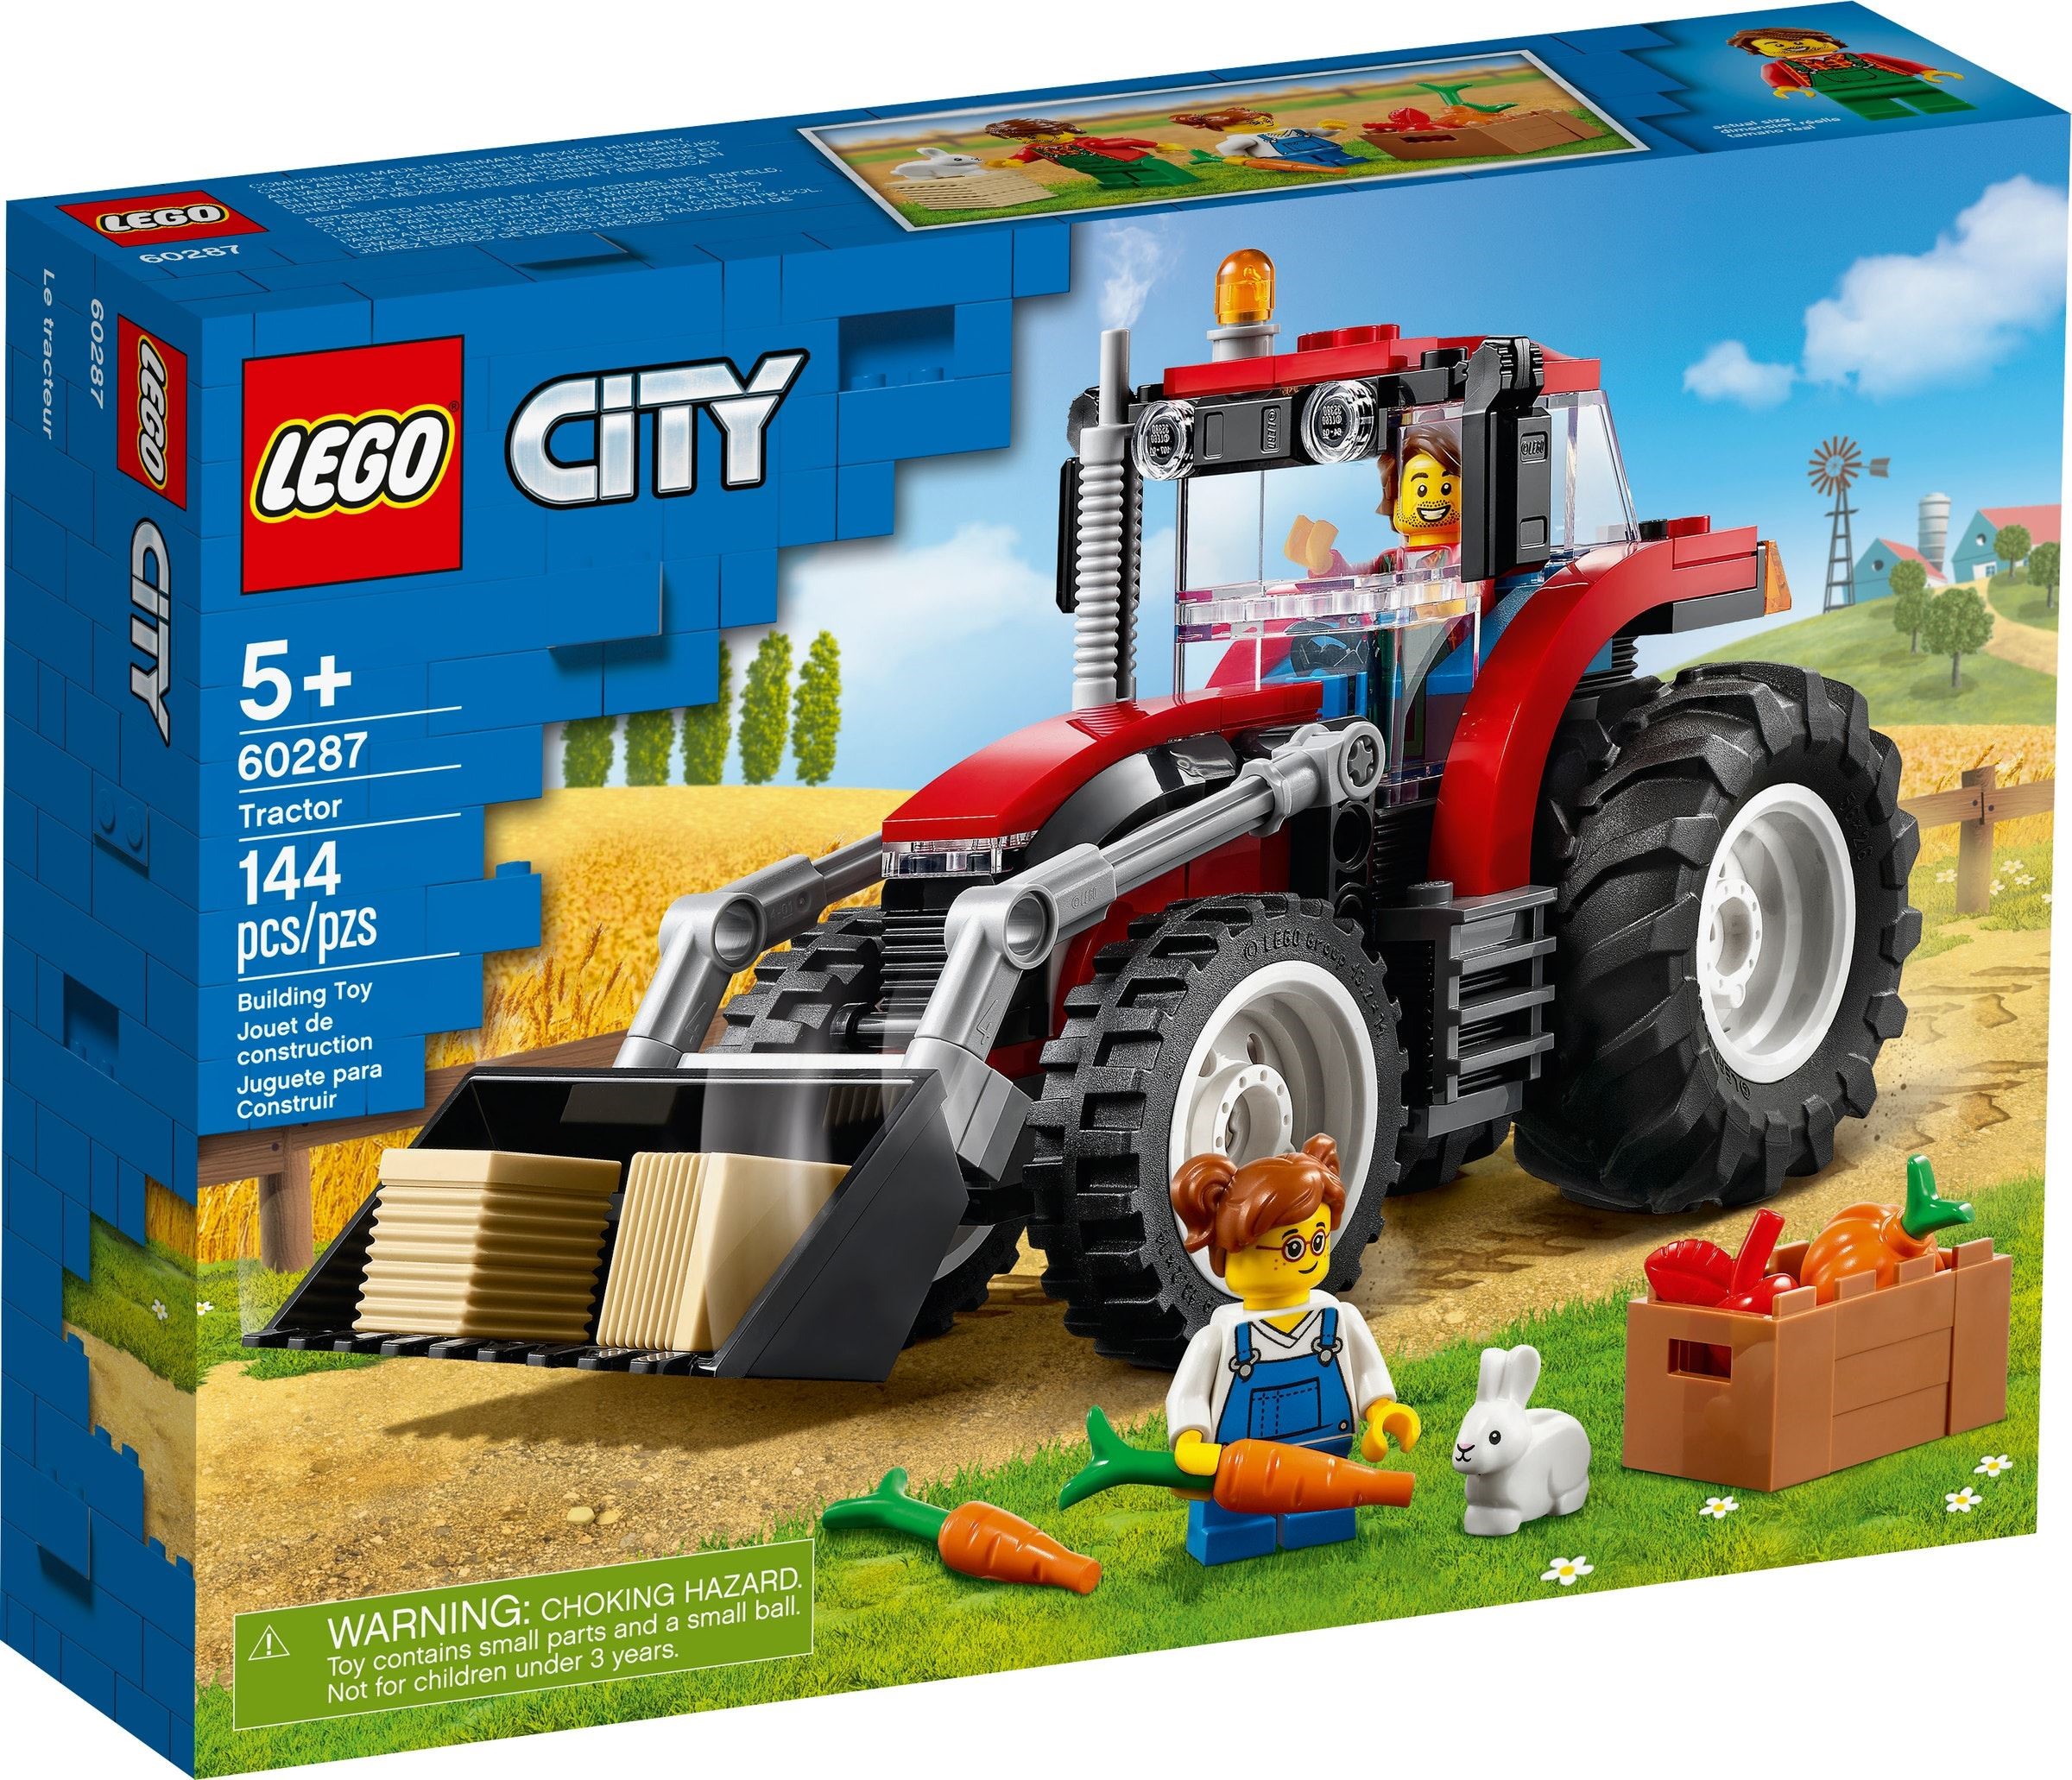 LEGO City - Tractor (60287)